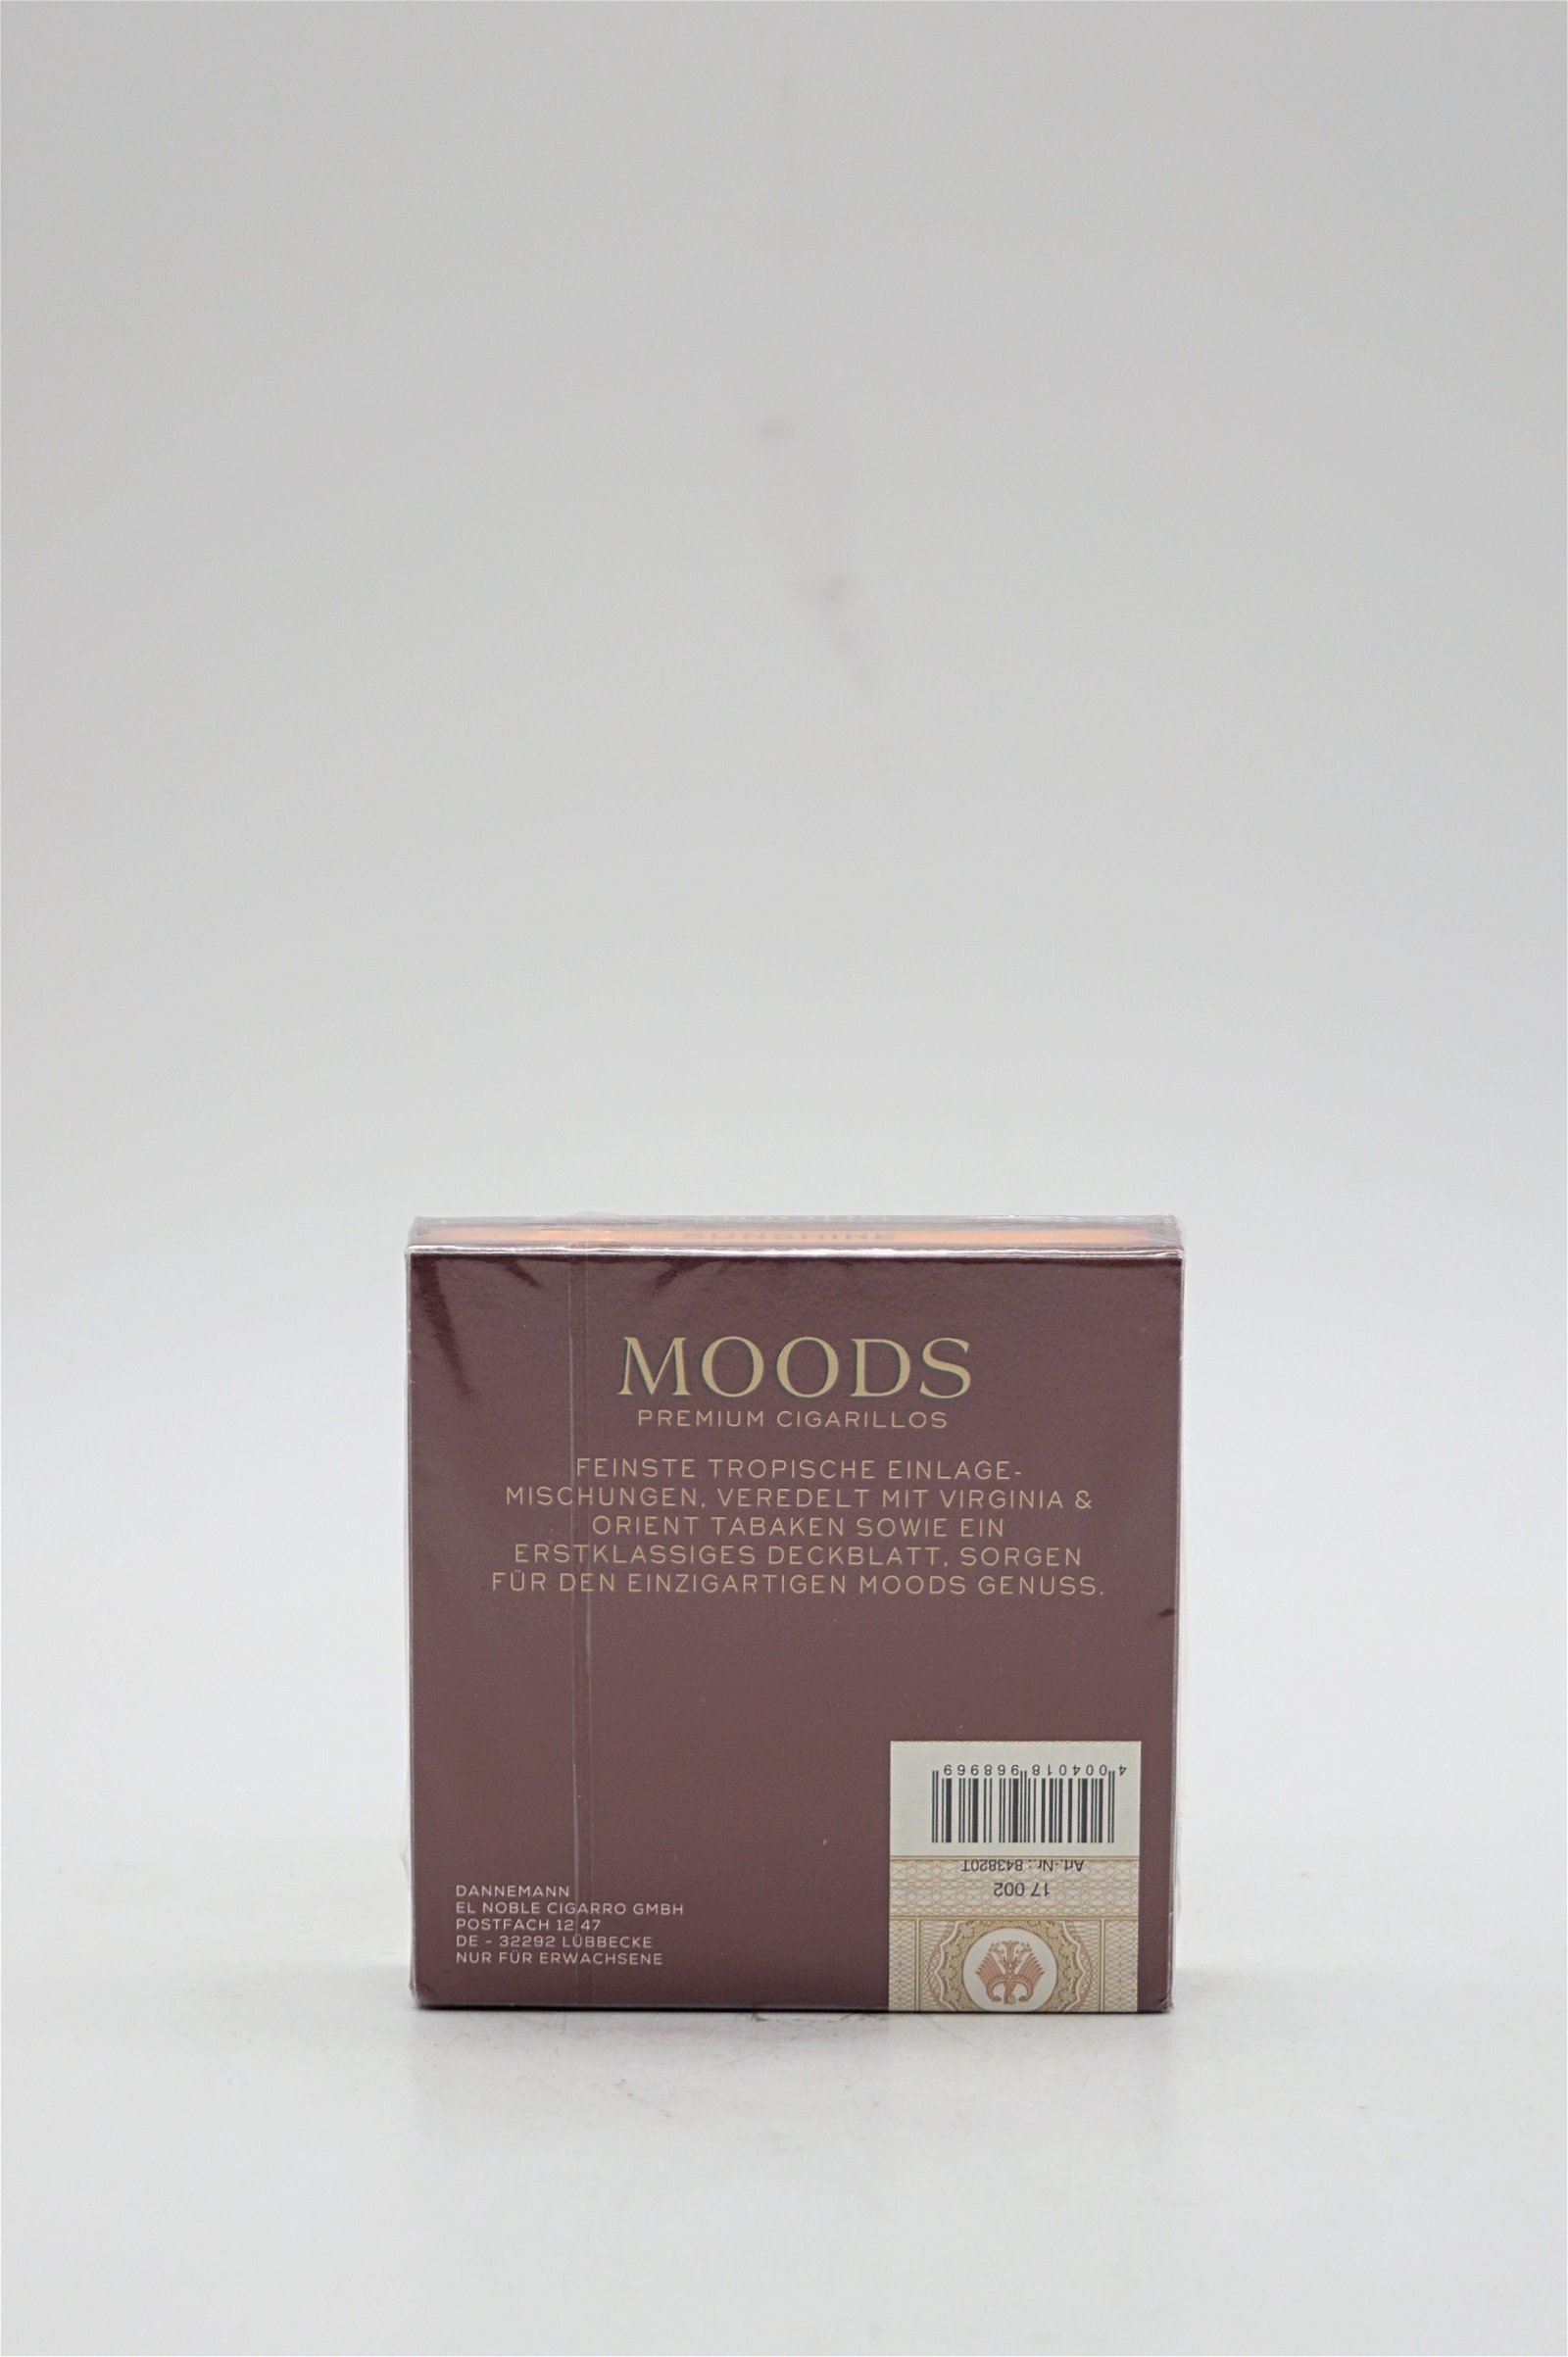 Moods Sunshine Filter 20 Premium Cigarillos